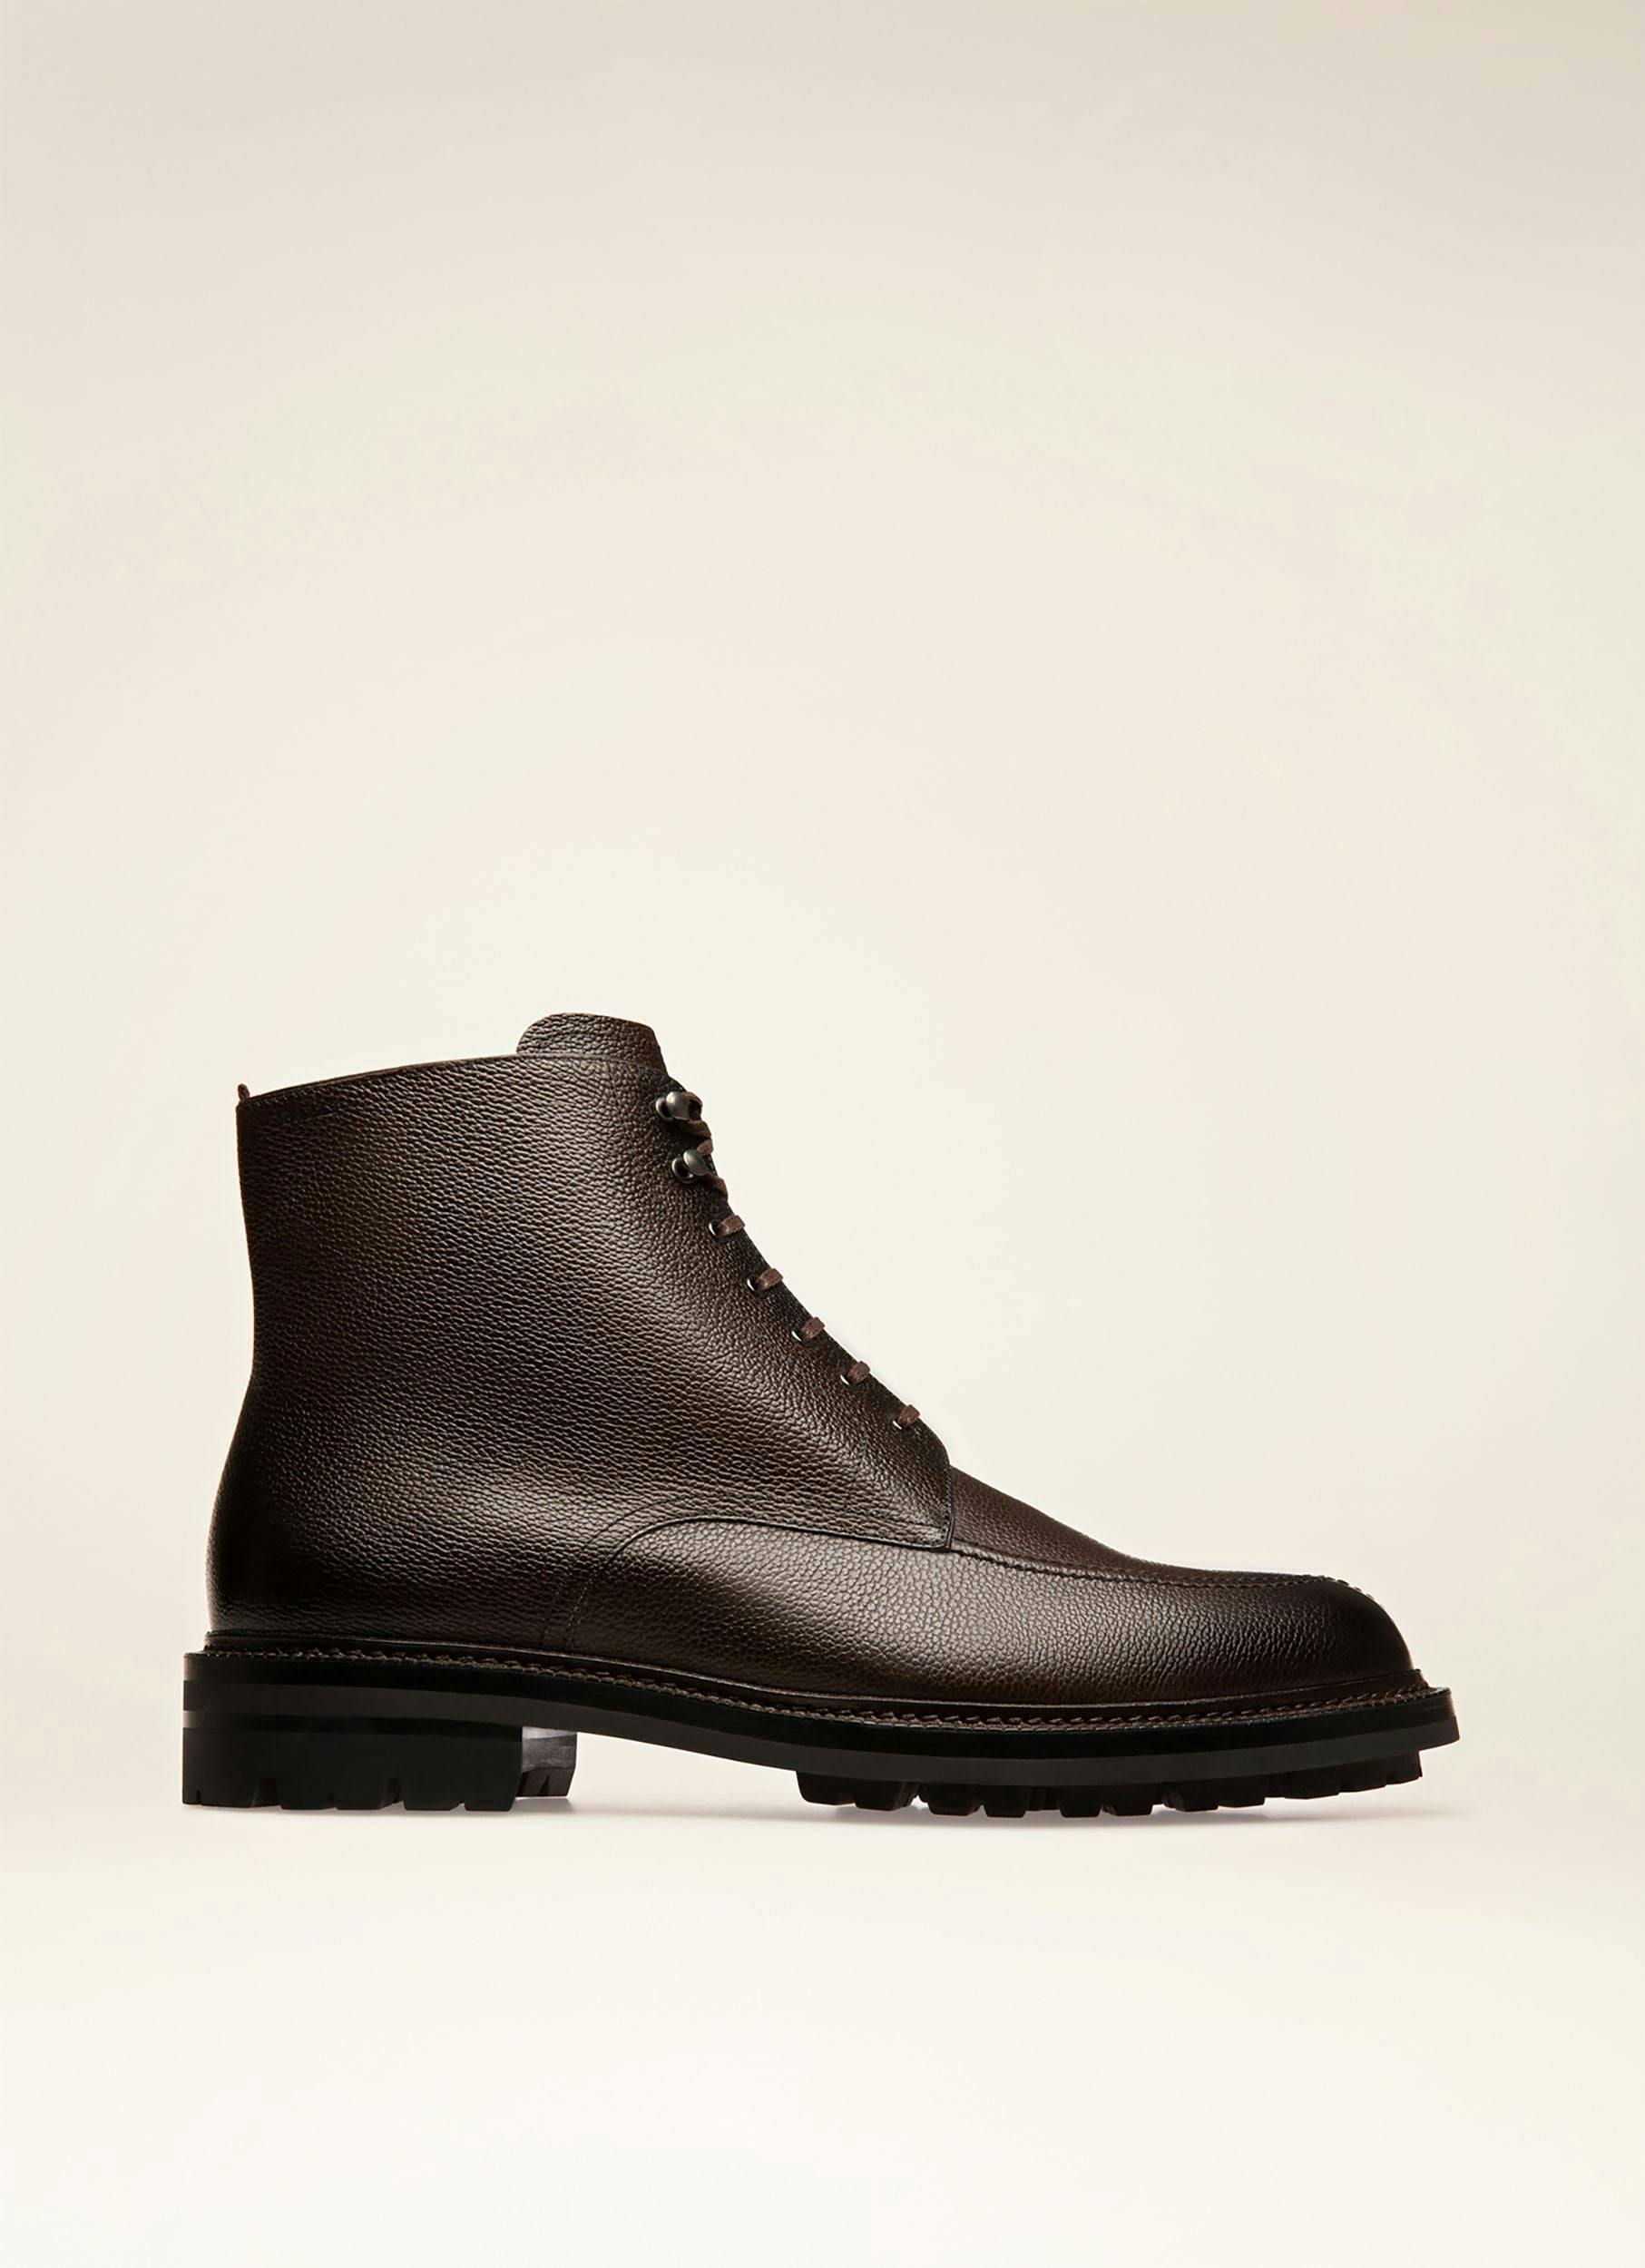 KRIENS Leather Boots In Ebony Brown - Men's - Bally - 01